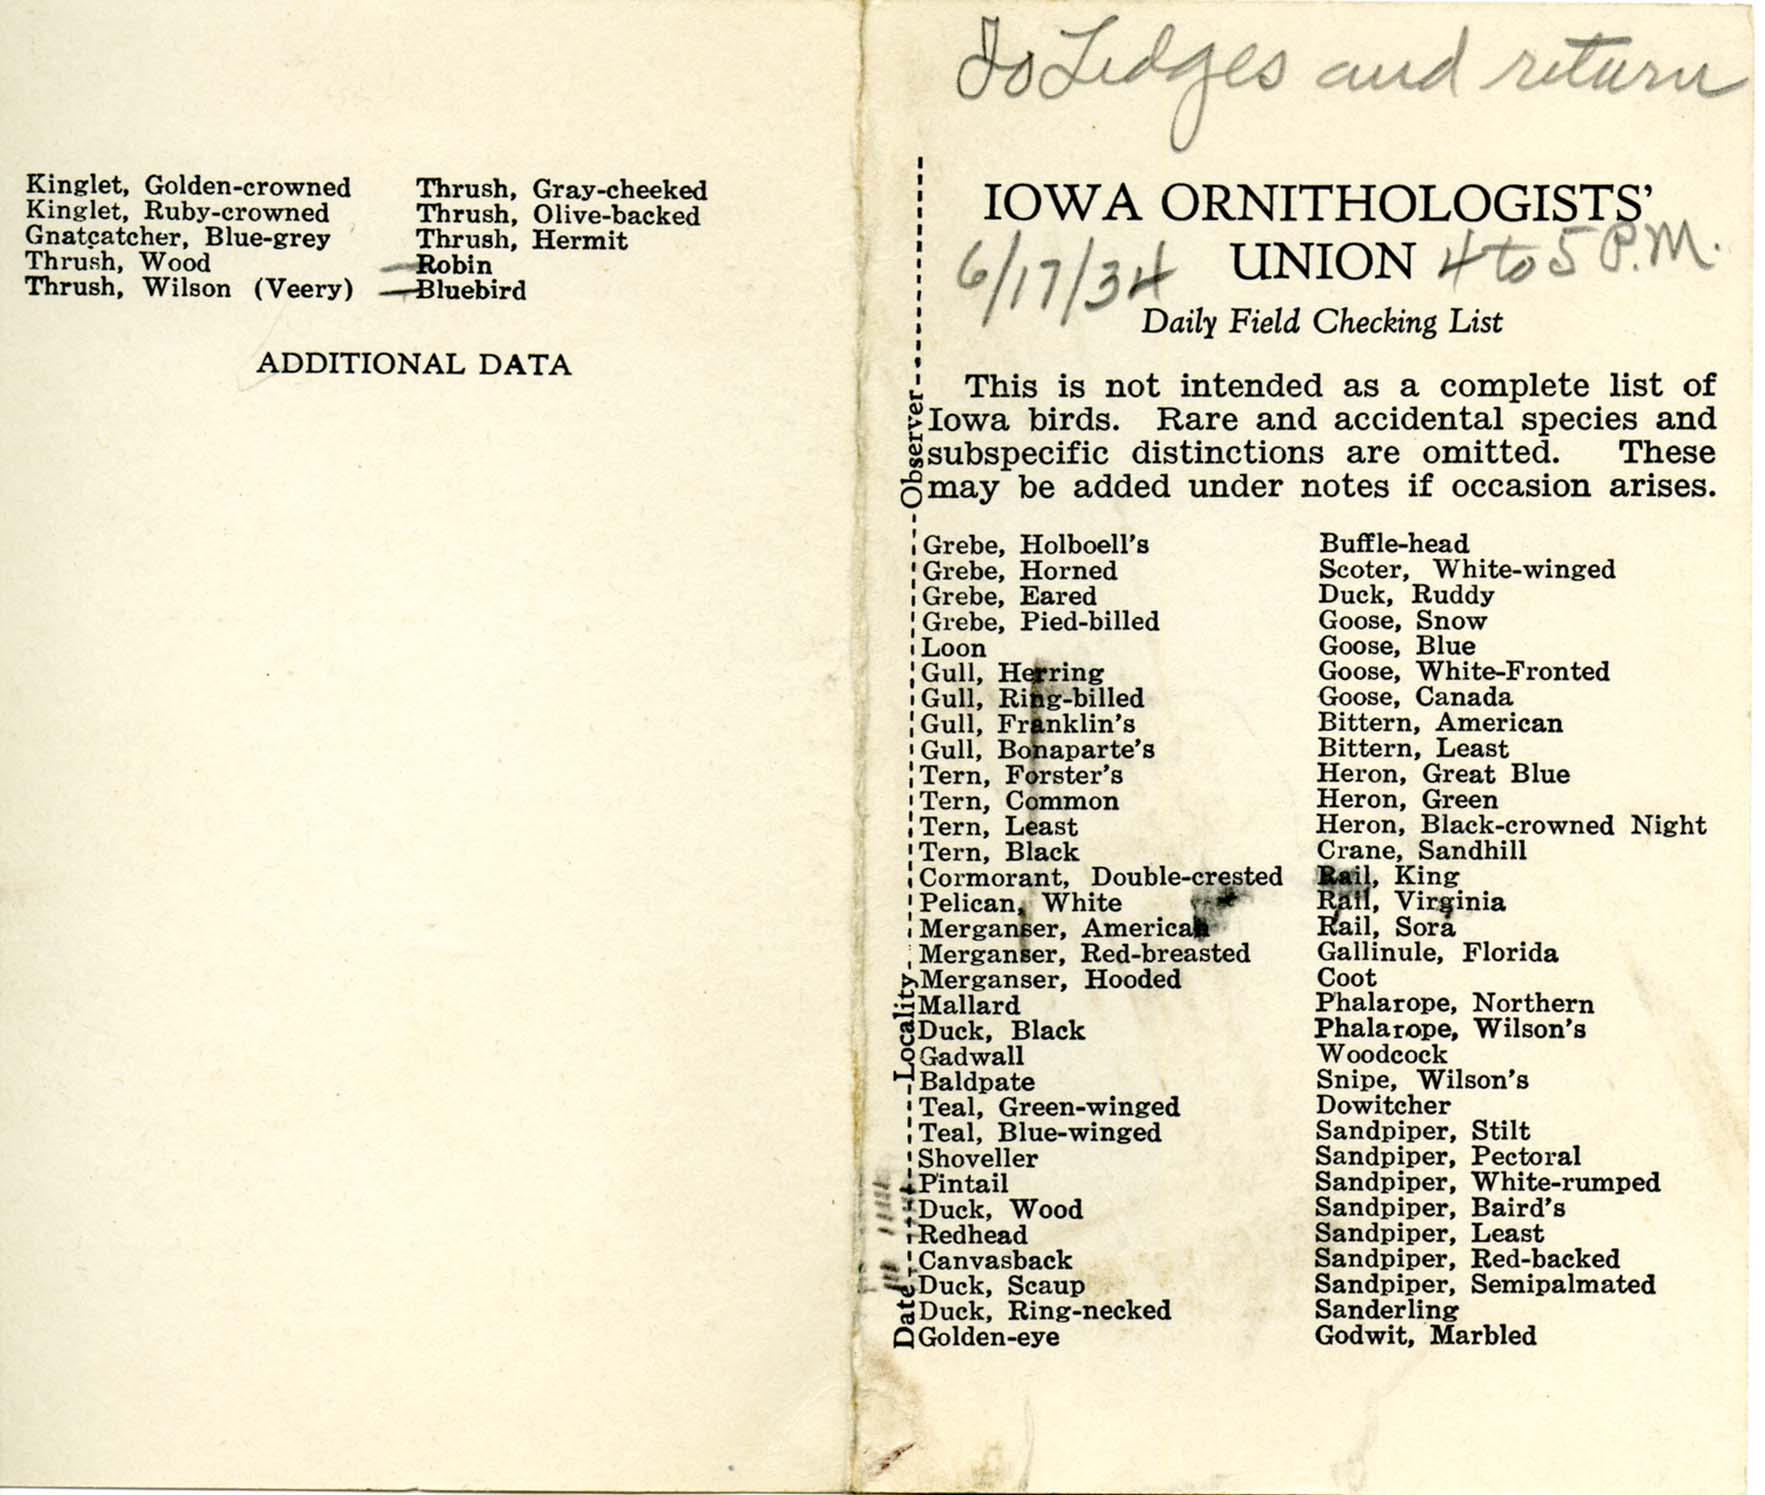 Daily field checking list, Walter Rosene, June 17, 1934